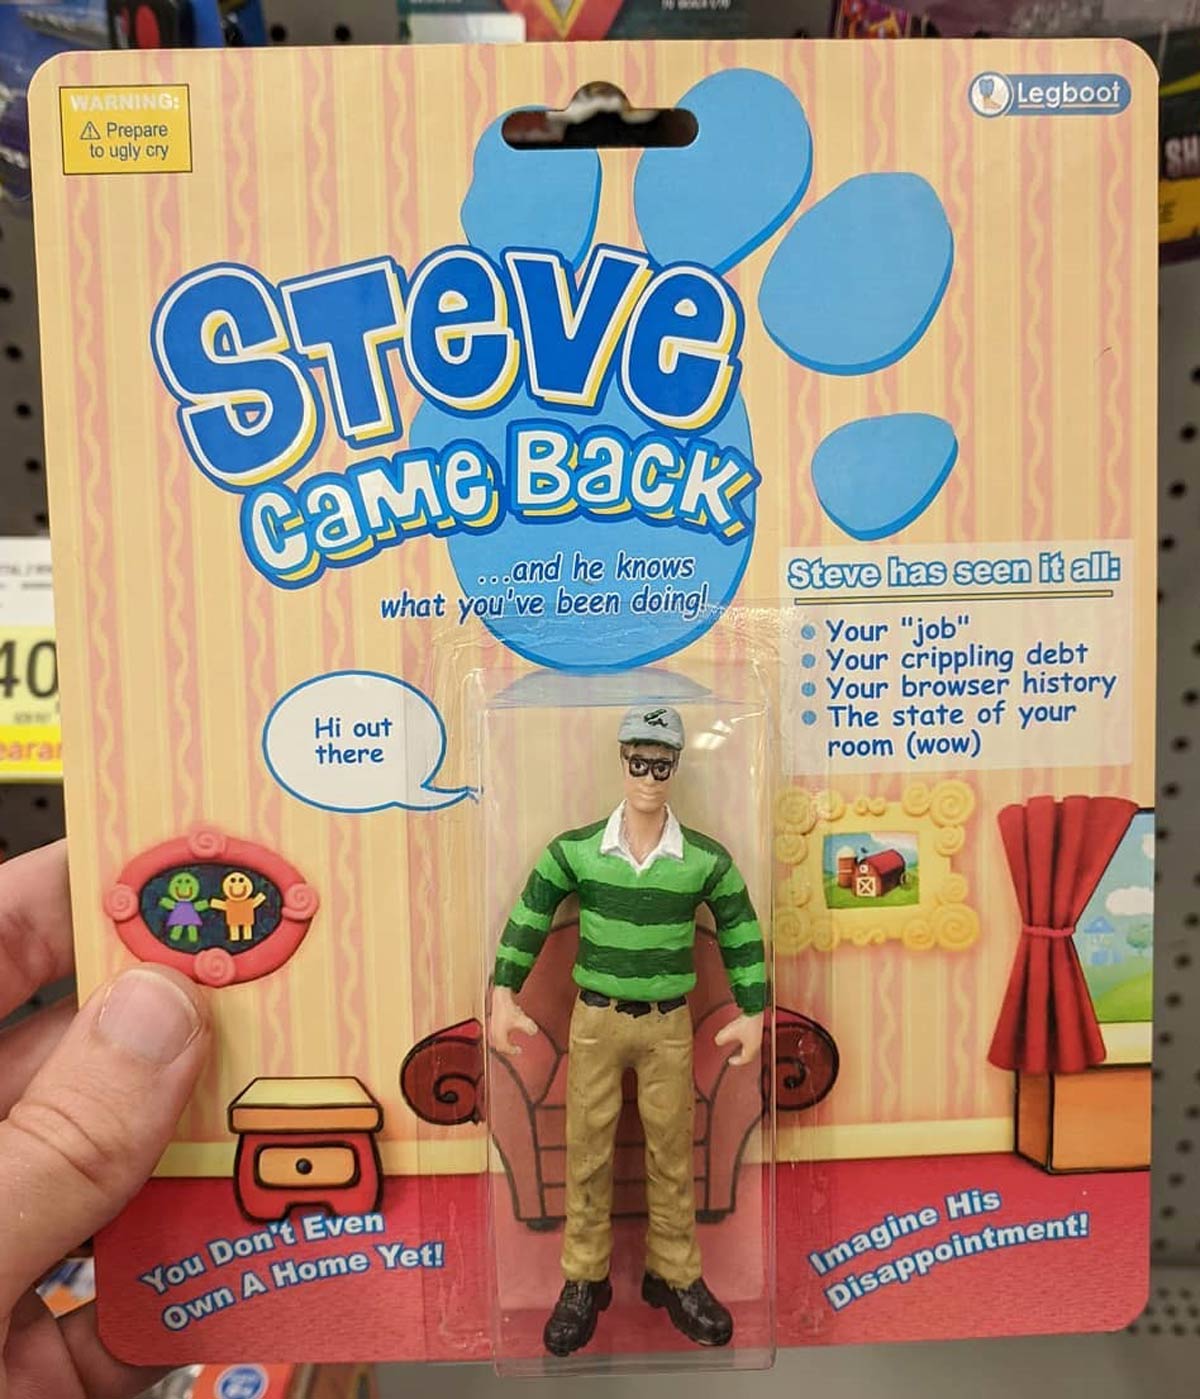 Steve came back